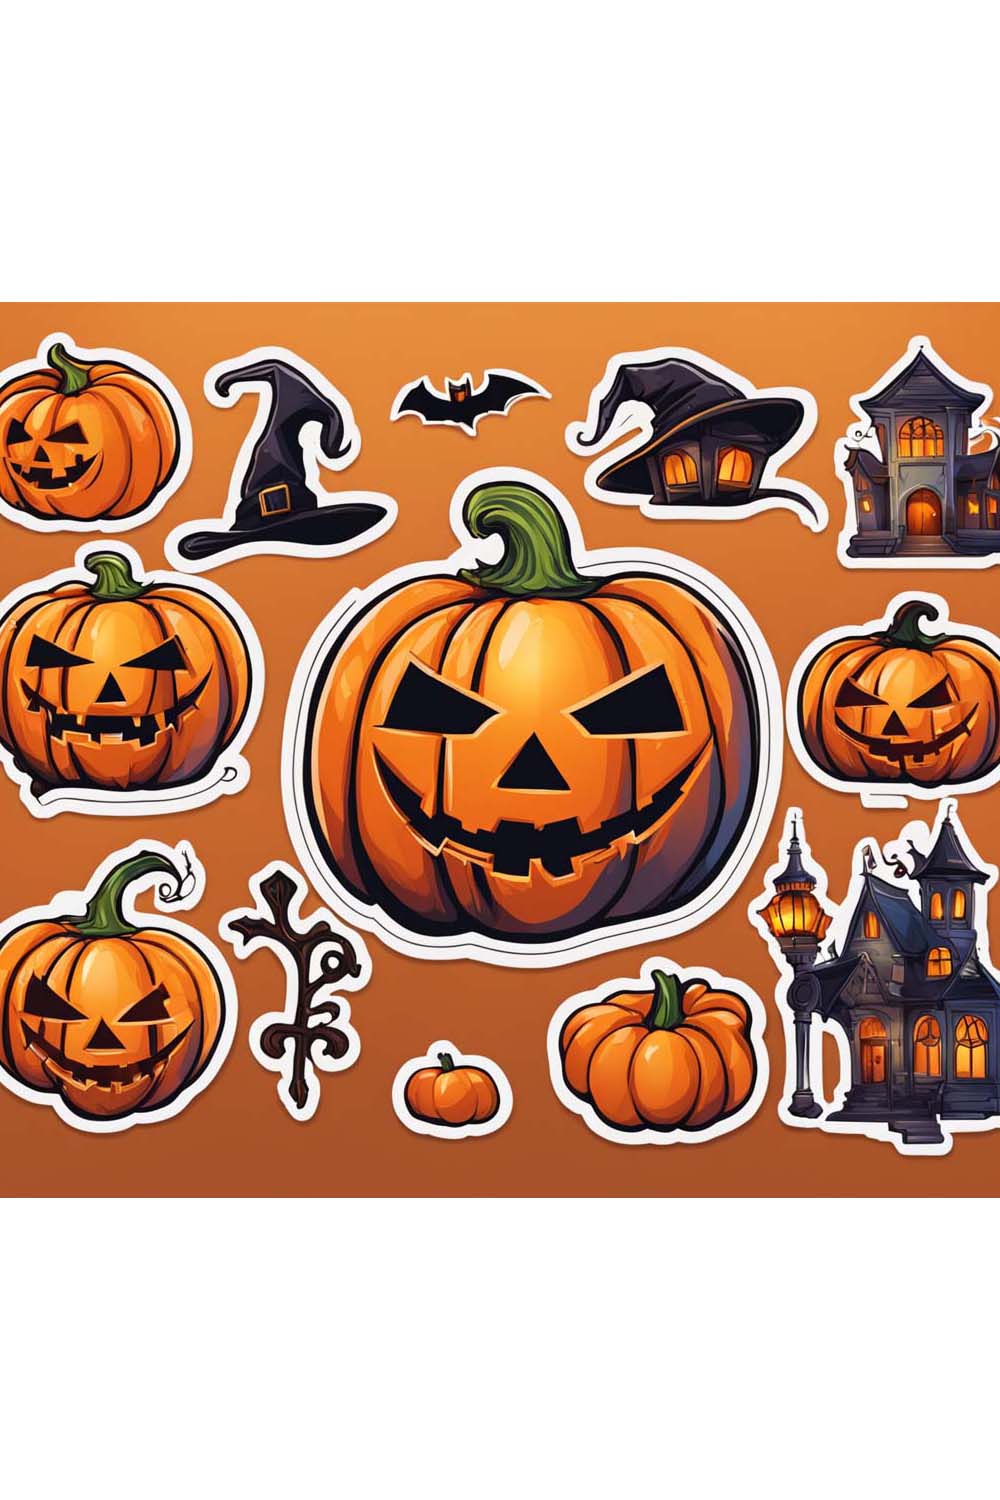 Halloween pumpkin sticker pack pinterest preview image.